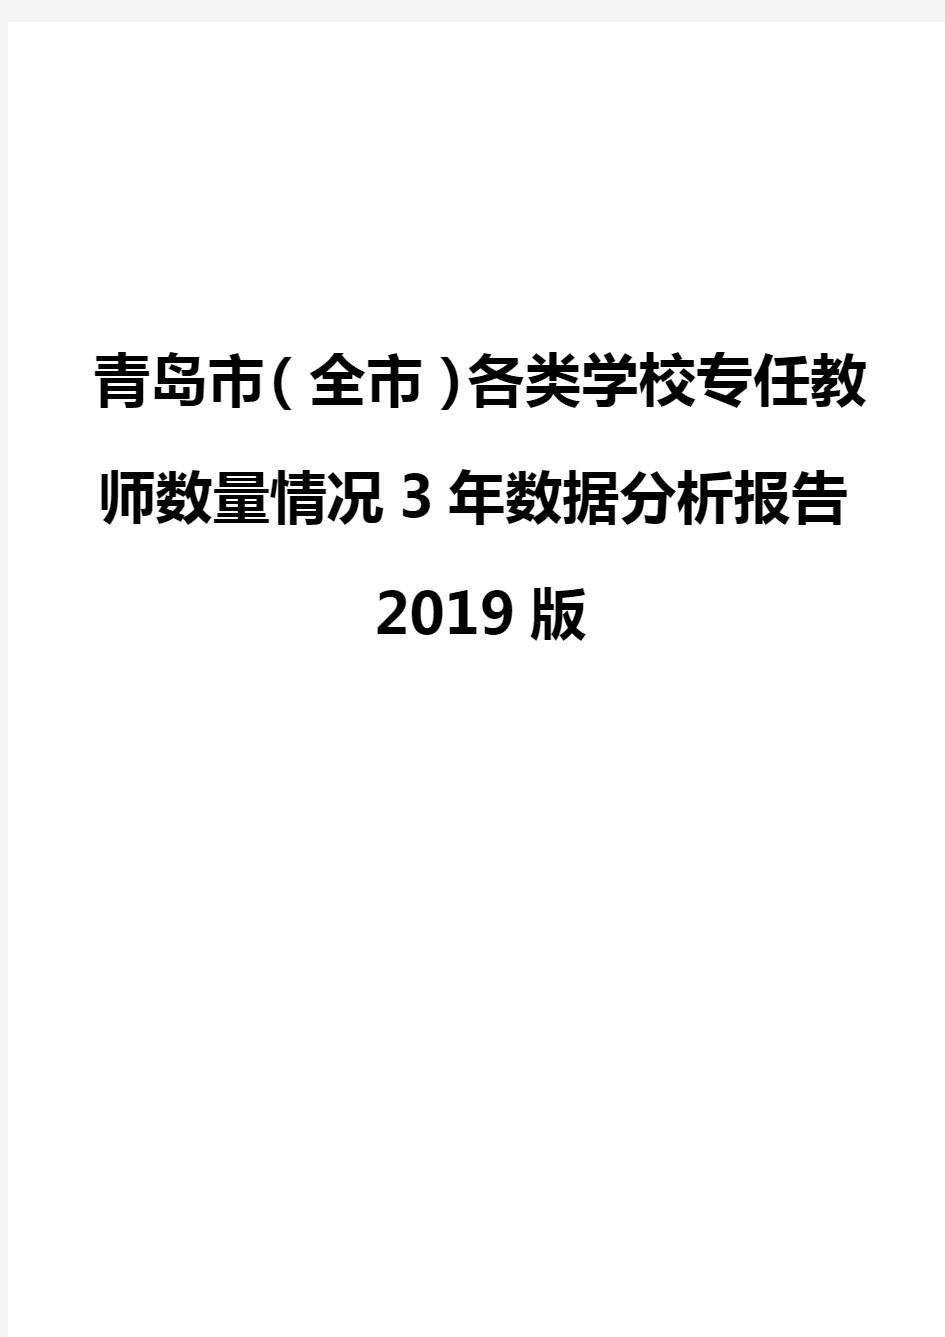 青岛市(全市)各类学校专任教师数量情况3年数据分析报告2019版